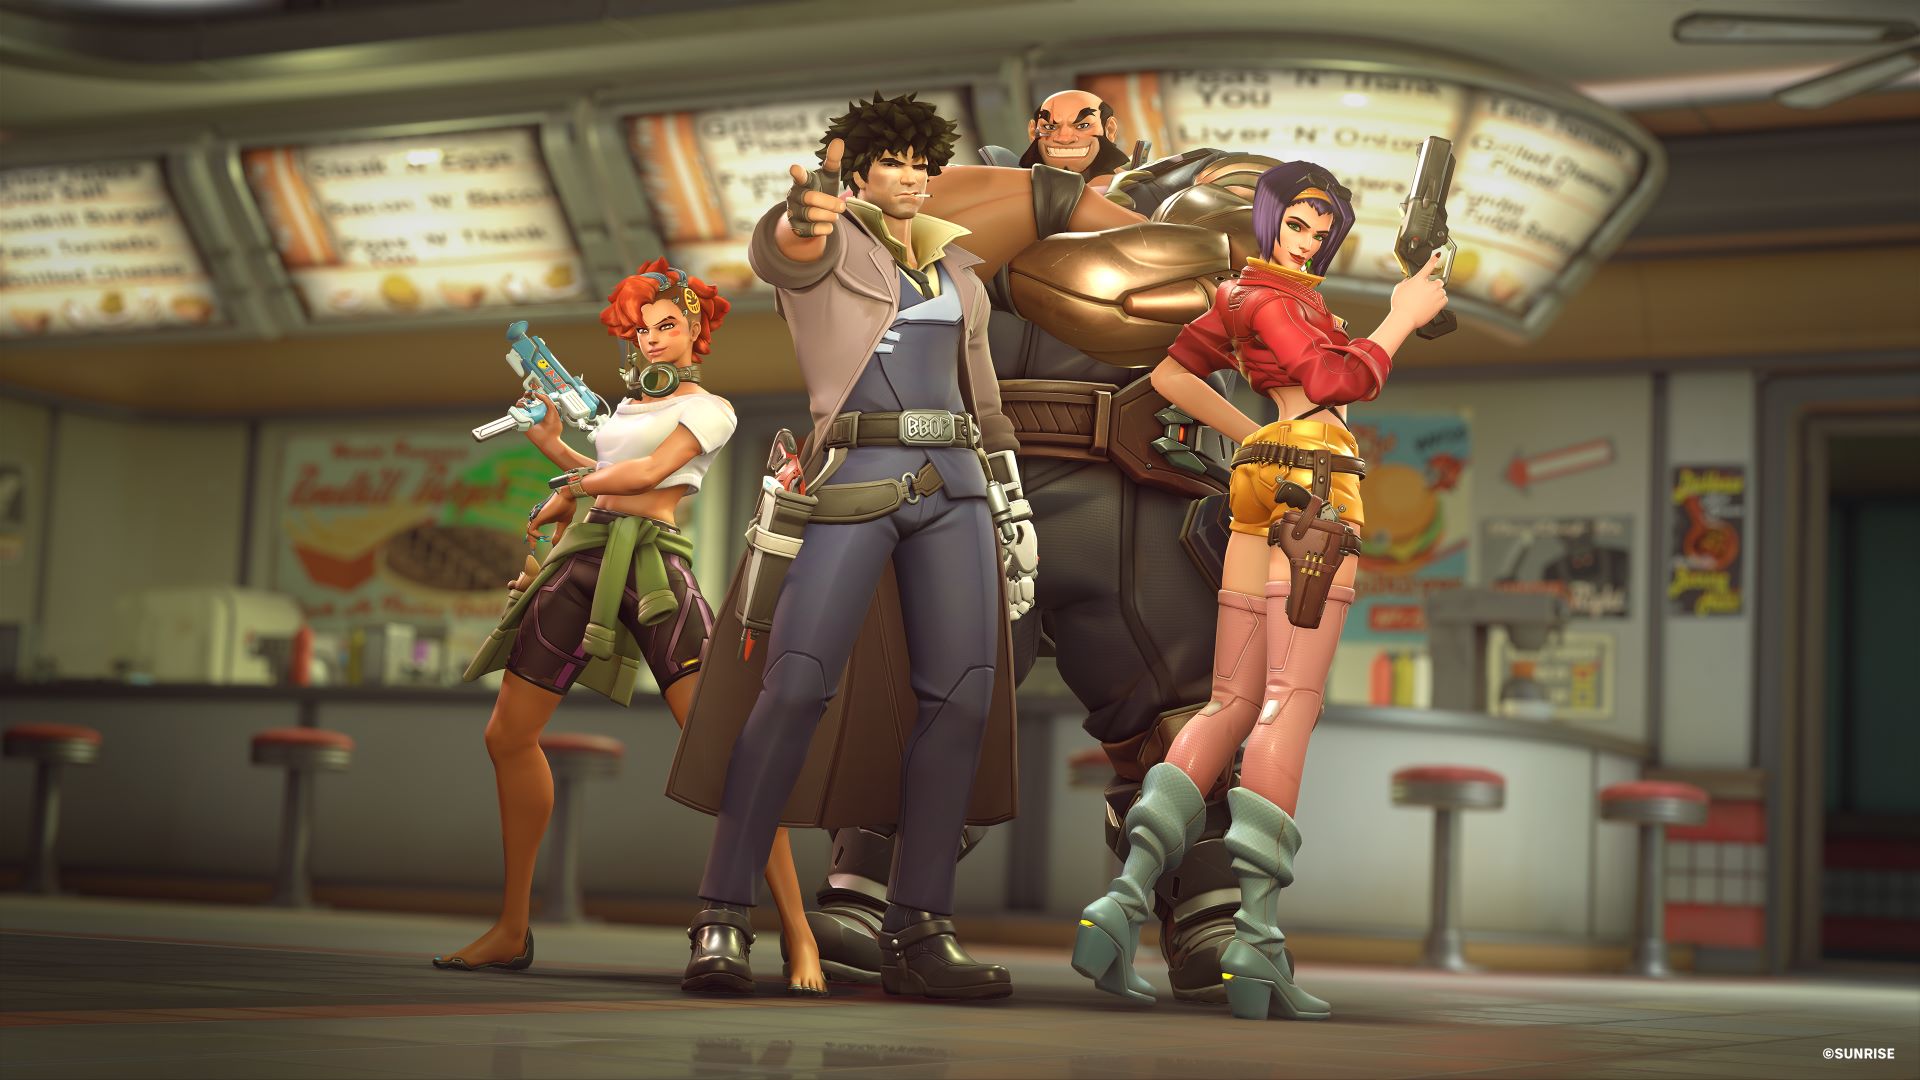 Blizzard opublikował nowy zwiastun Overwatch 2, pokazujący jak bohaterowie gry będą wyglądać ze skórkami Cowboy Bebop